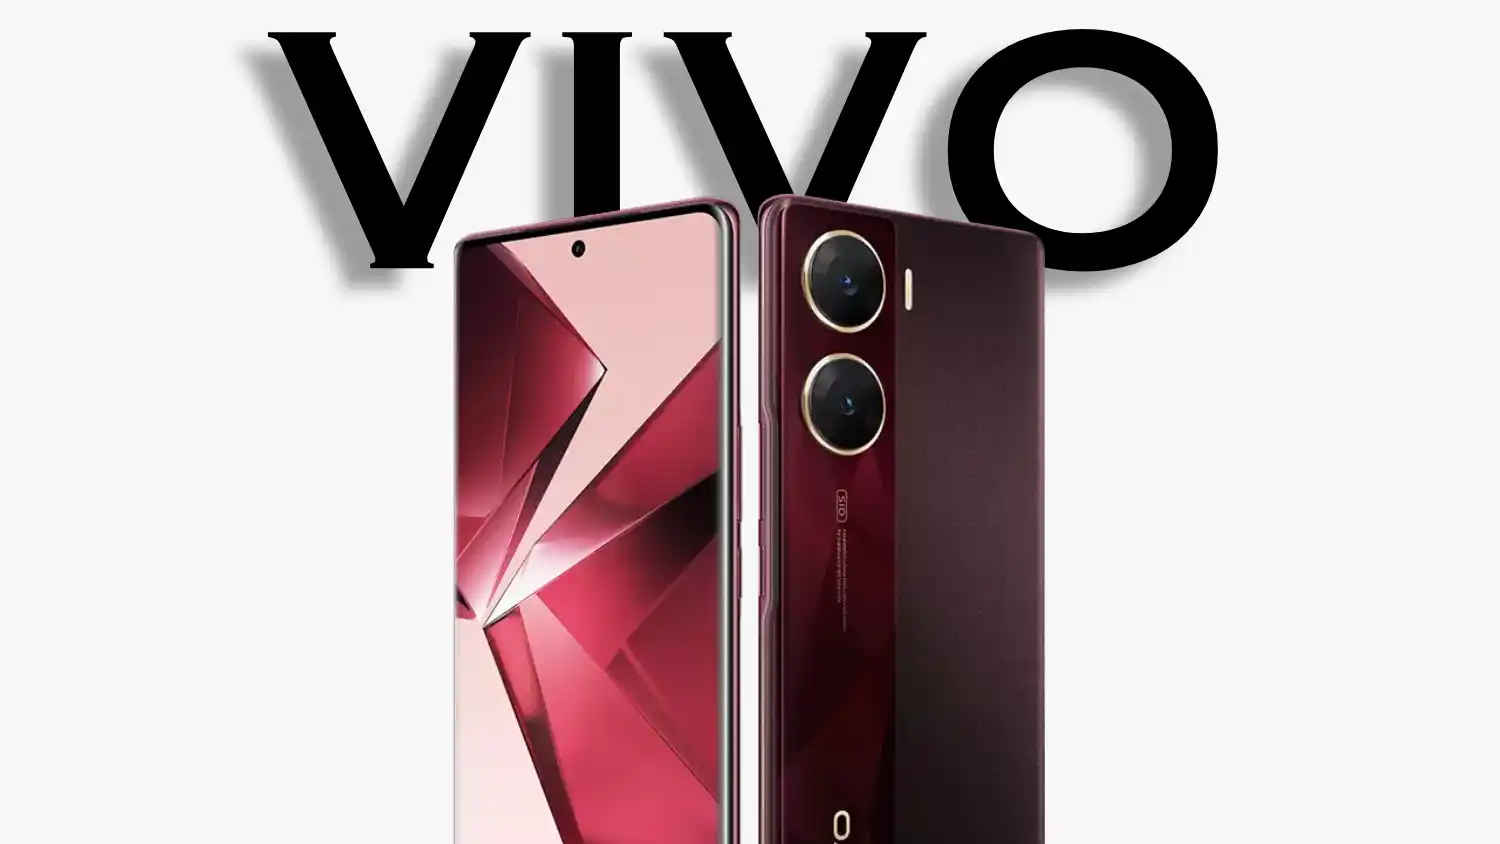 5500mAh बैटरी के साथ आने वाला सबसे पतला फोन होगा Vivo V30e, लॉन्च से पहले लीक हुईं महत्वपूर्ण डिटेल्स